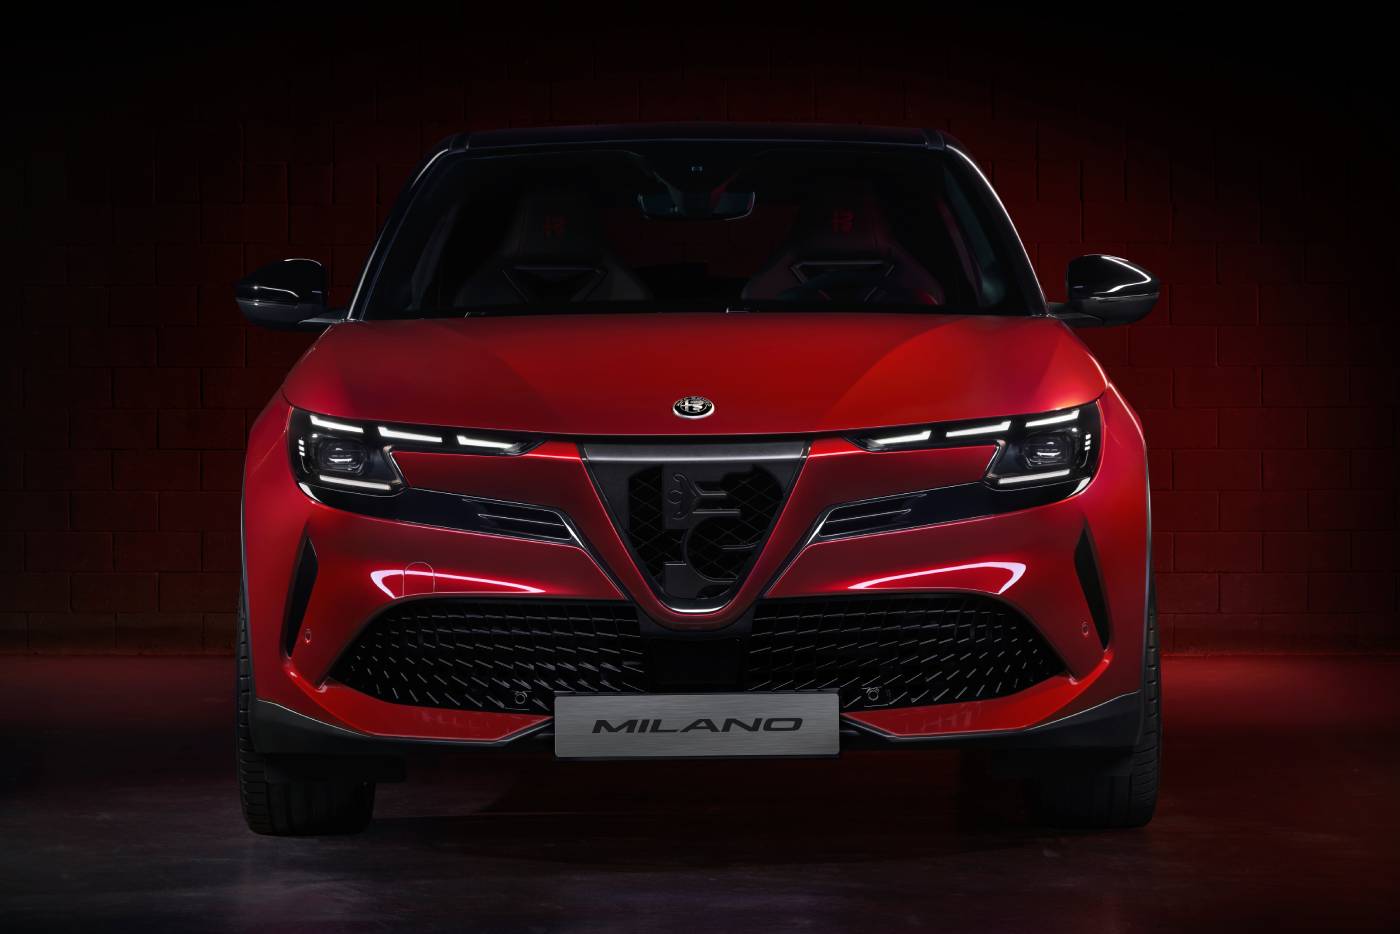 Η Ιταλία αλλάζει όνομα στην Alfa Romeo Milano